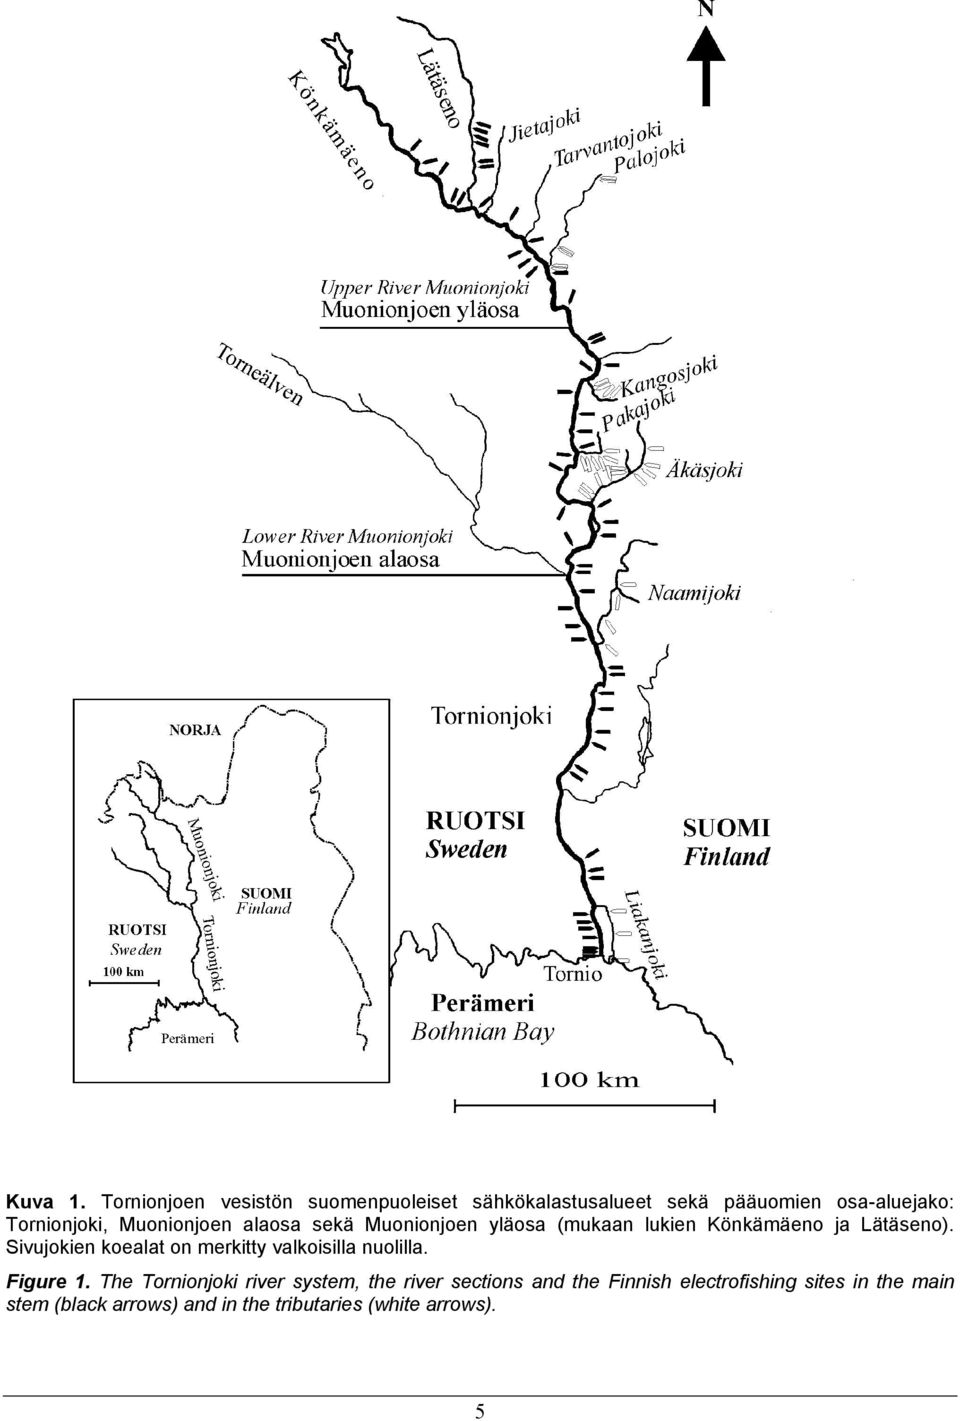 Muonionjoen alaosa sekä Muonionjoen yläosa (mukaan lukien Könkämäeno ja Lätäseno).